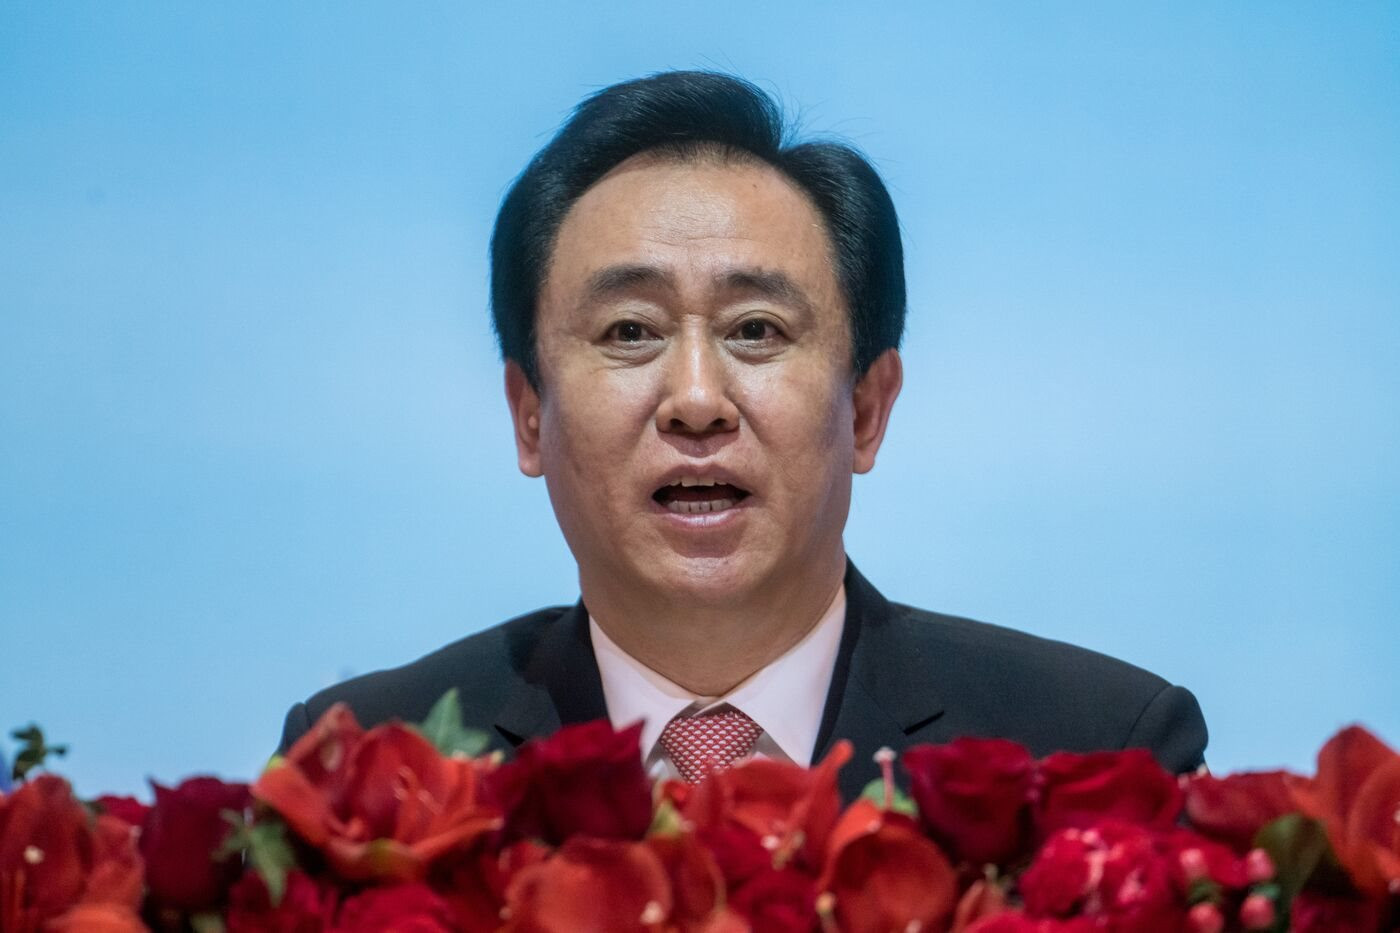 ‘Chuyện lạ’ ở Trung Quốc: Loạt ‘ông trùm’ bất động sản tưởng ‘ngã ngựa’ nhưng vẫn nhận hàng tỷ USD cổ tức và tiếp tục lãnh đạo công ty - Ảnh 2.